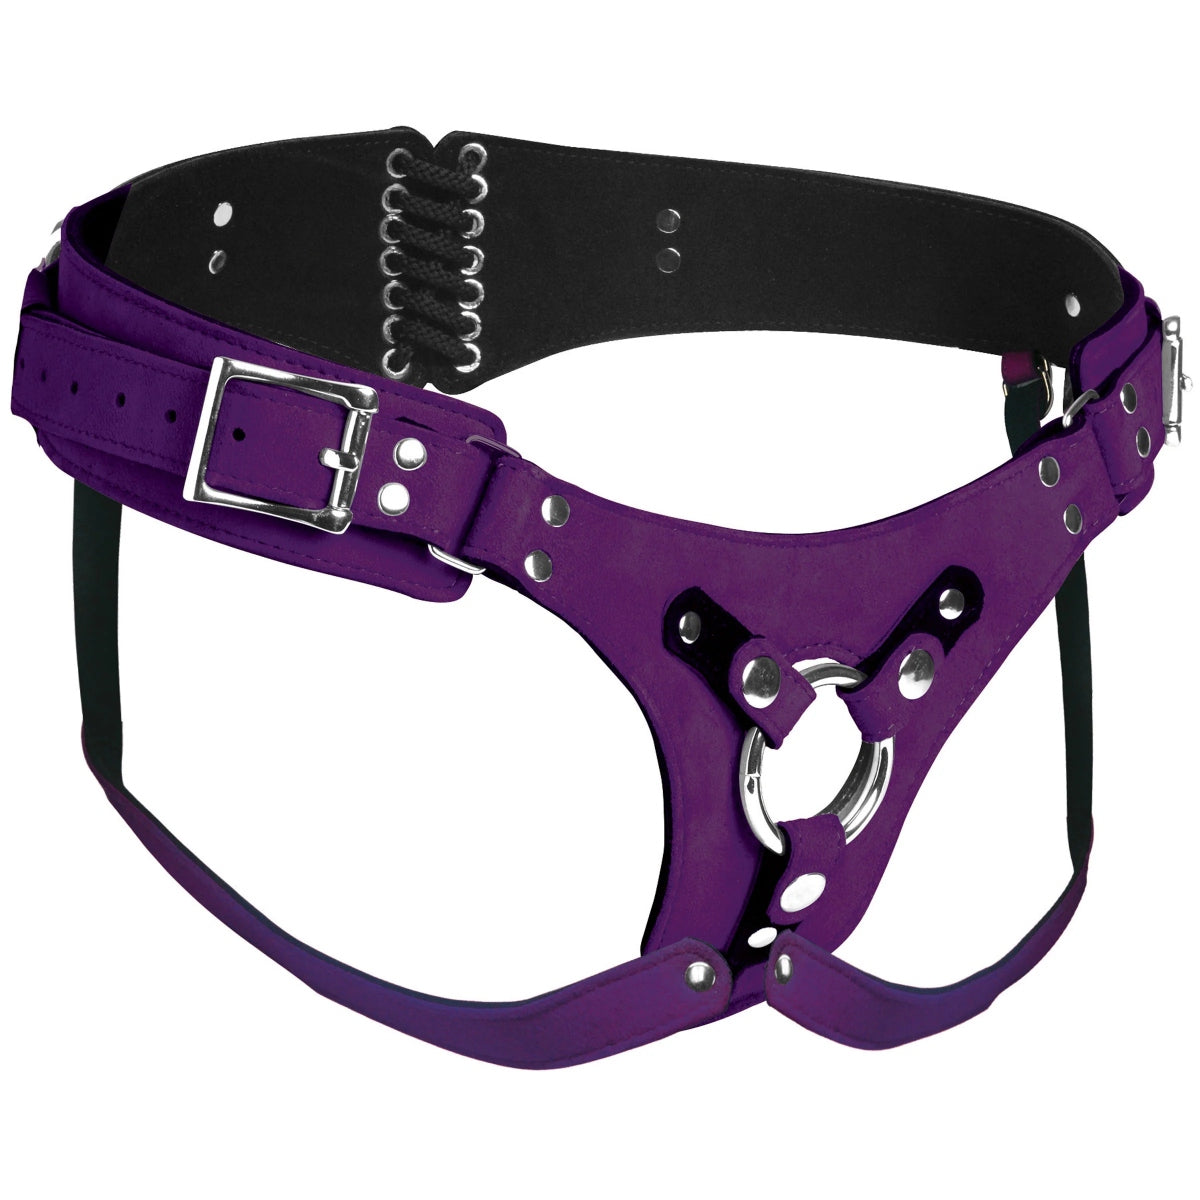 Strap U Bodice Deluxe Leather Corset Harness Purple